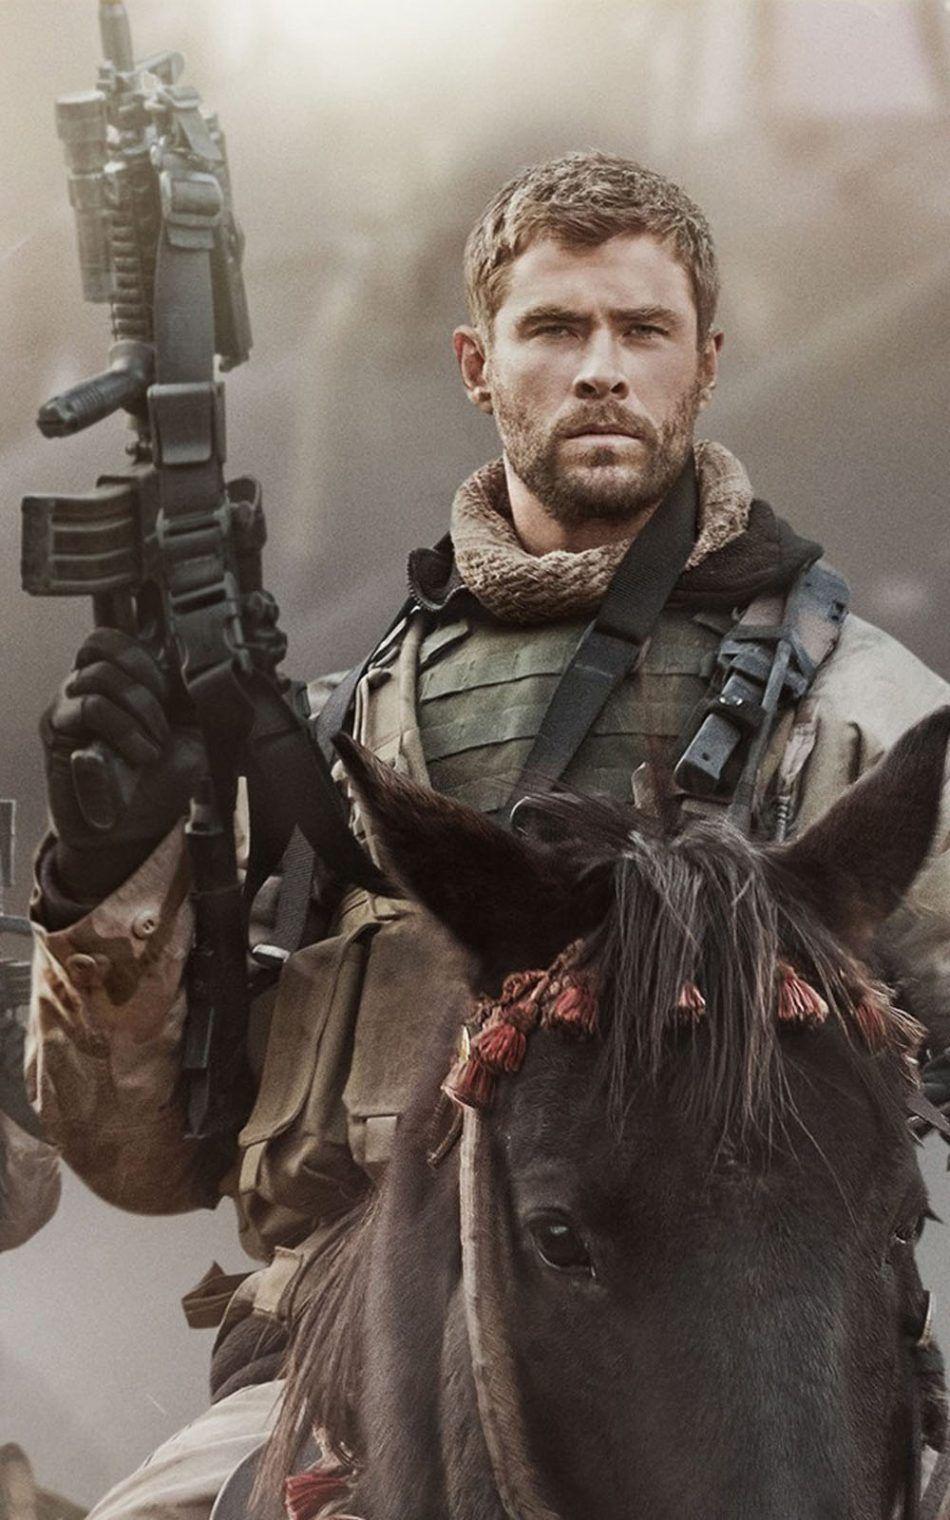 قشنگ ترین عکس کریس همسورث Chris Hemsworth بازیگر استرالیایی